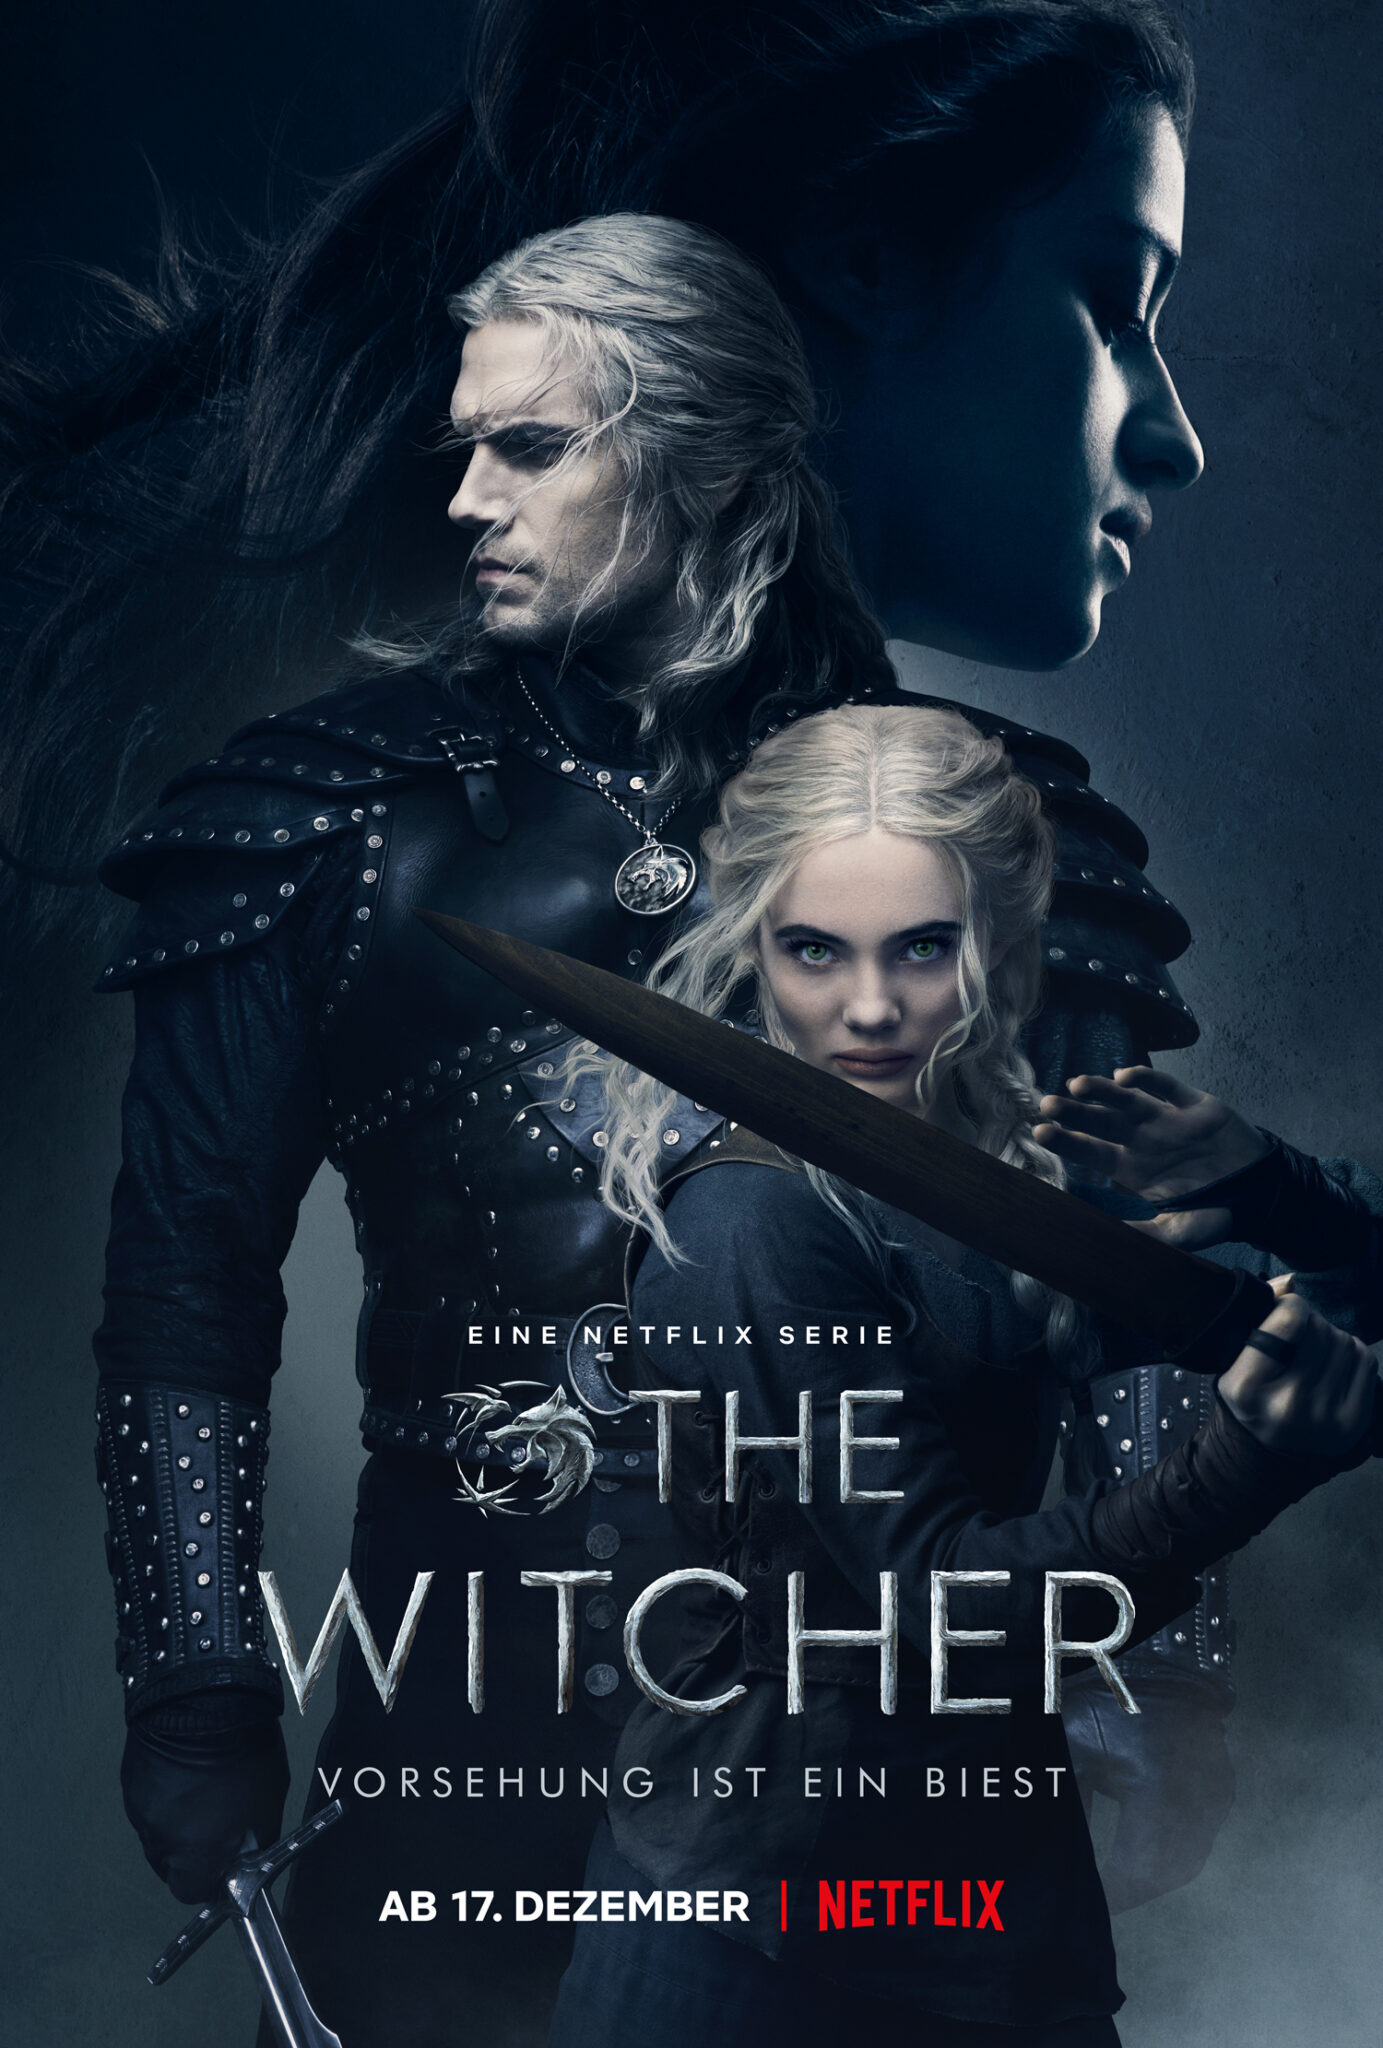 Das deutsche Plakat zur zweiten Staffel von The Witcher zeigt die drei Hauptfiguren, Yennefer, Geralt und Ciri.